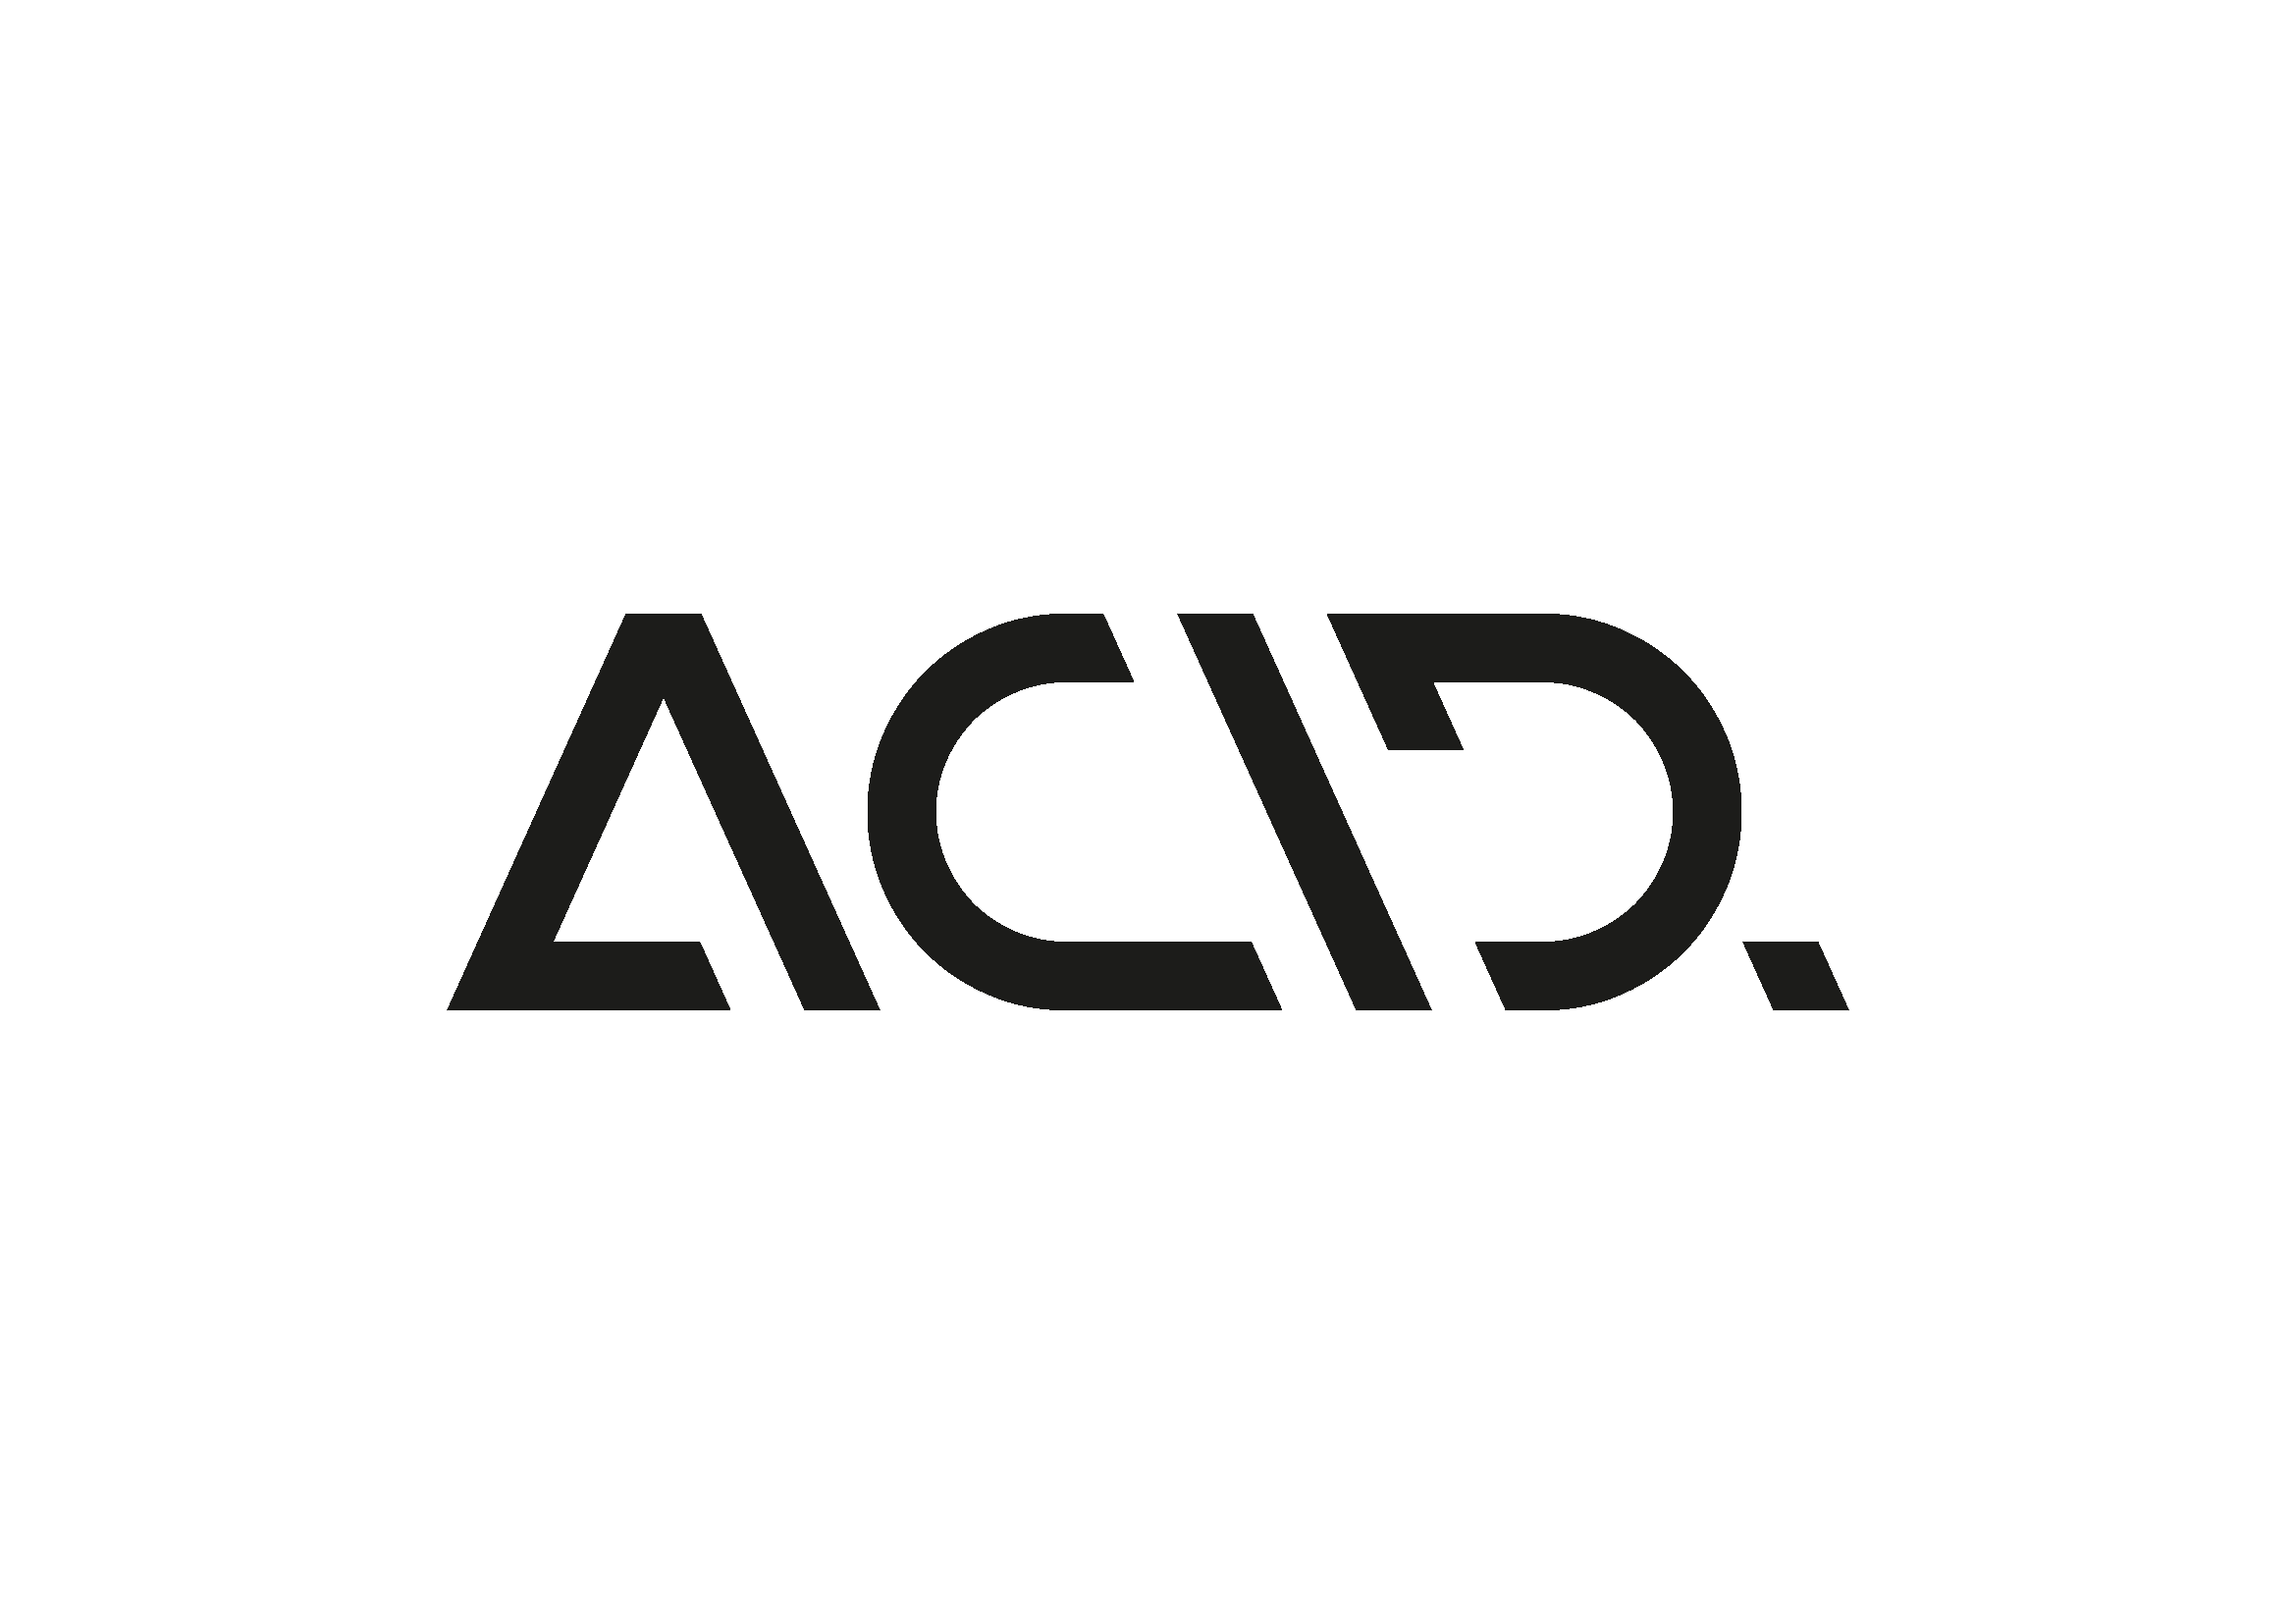 acid logo